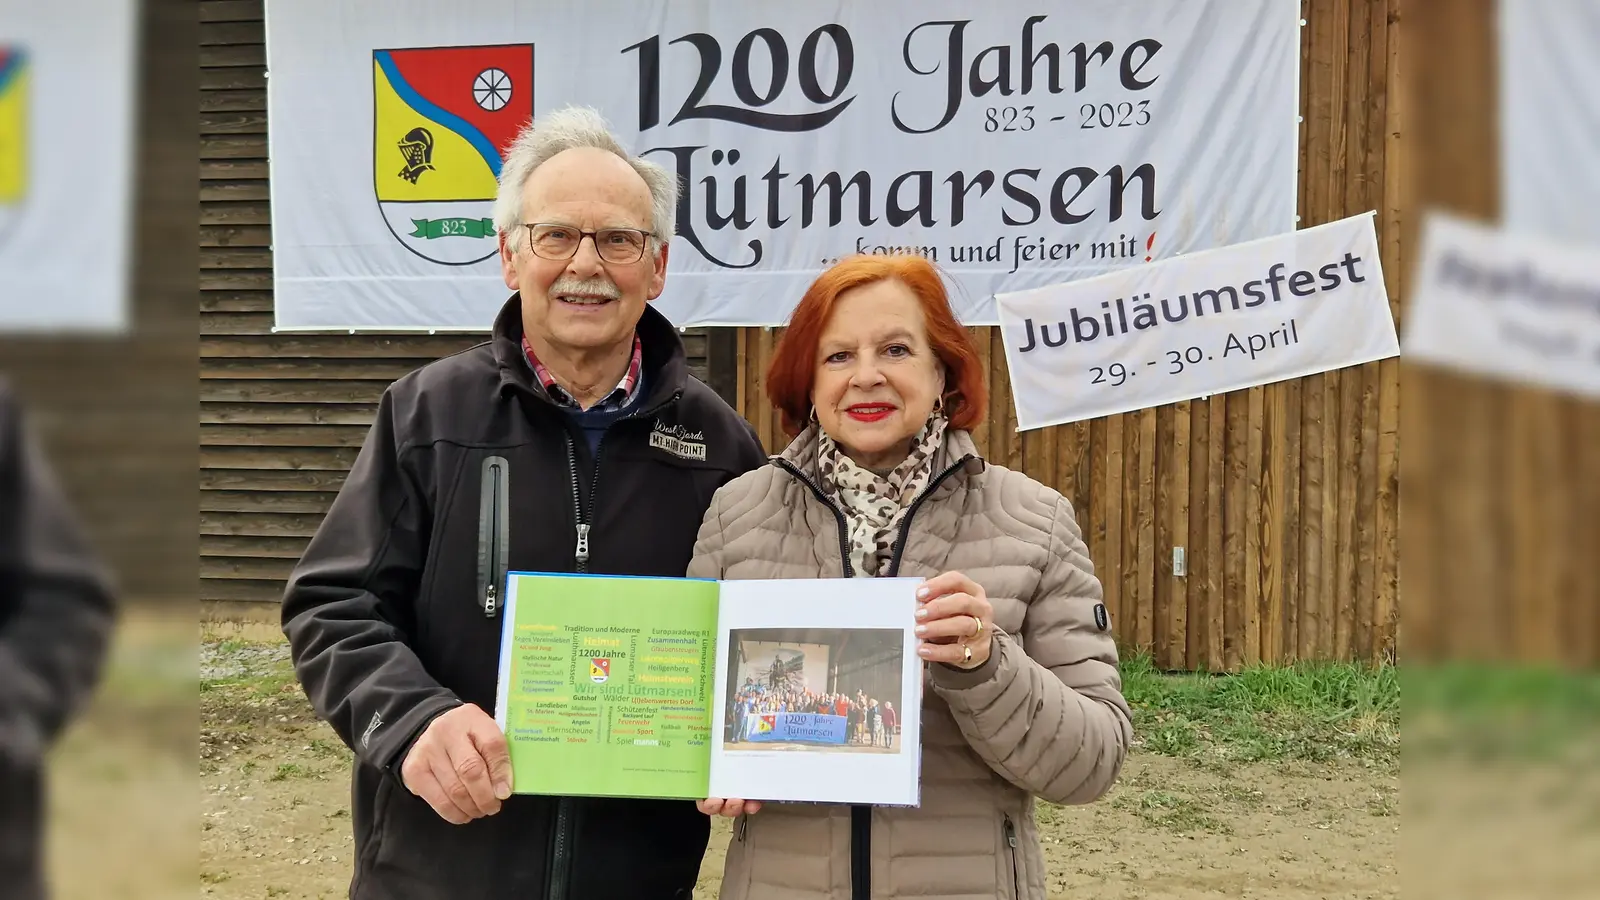 Karl-Josef Kruse und Anke Baumgarten präsentieren die Festschrift zum Jubiläum Lütmarsens. (Foto: privat)